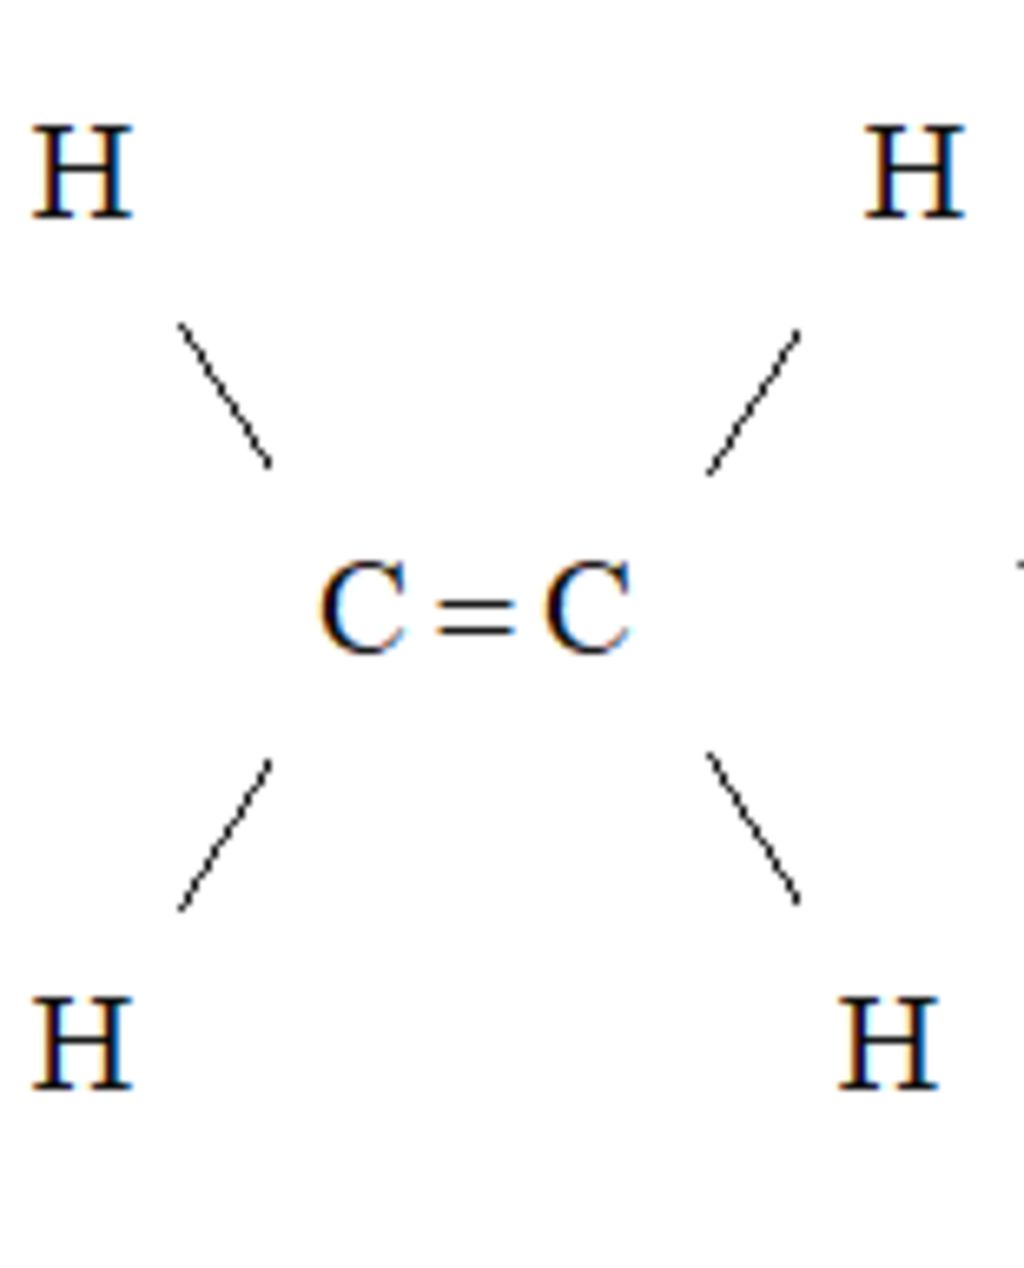 Cấu trúc của phân tử C2H4 như thế nào?
